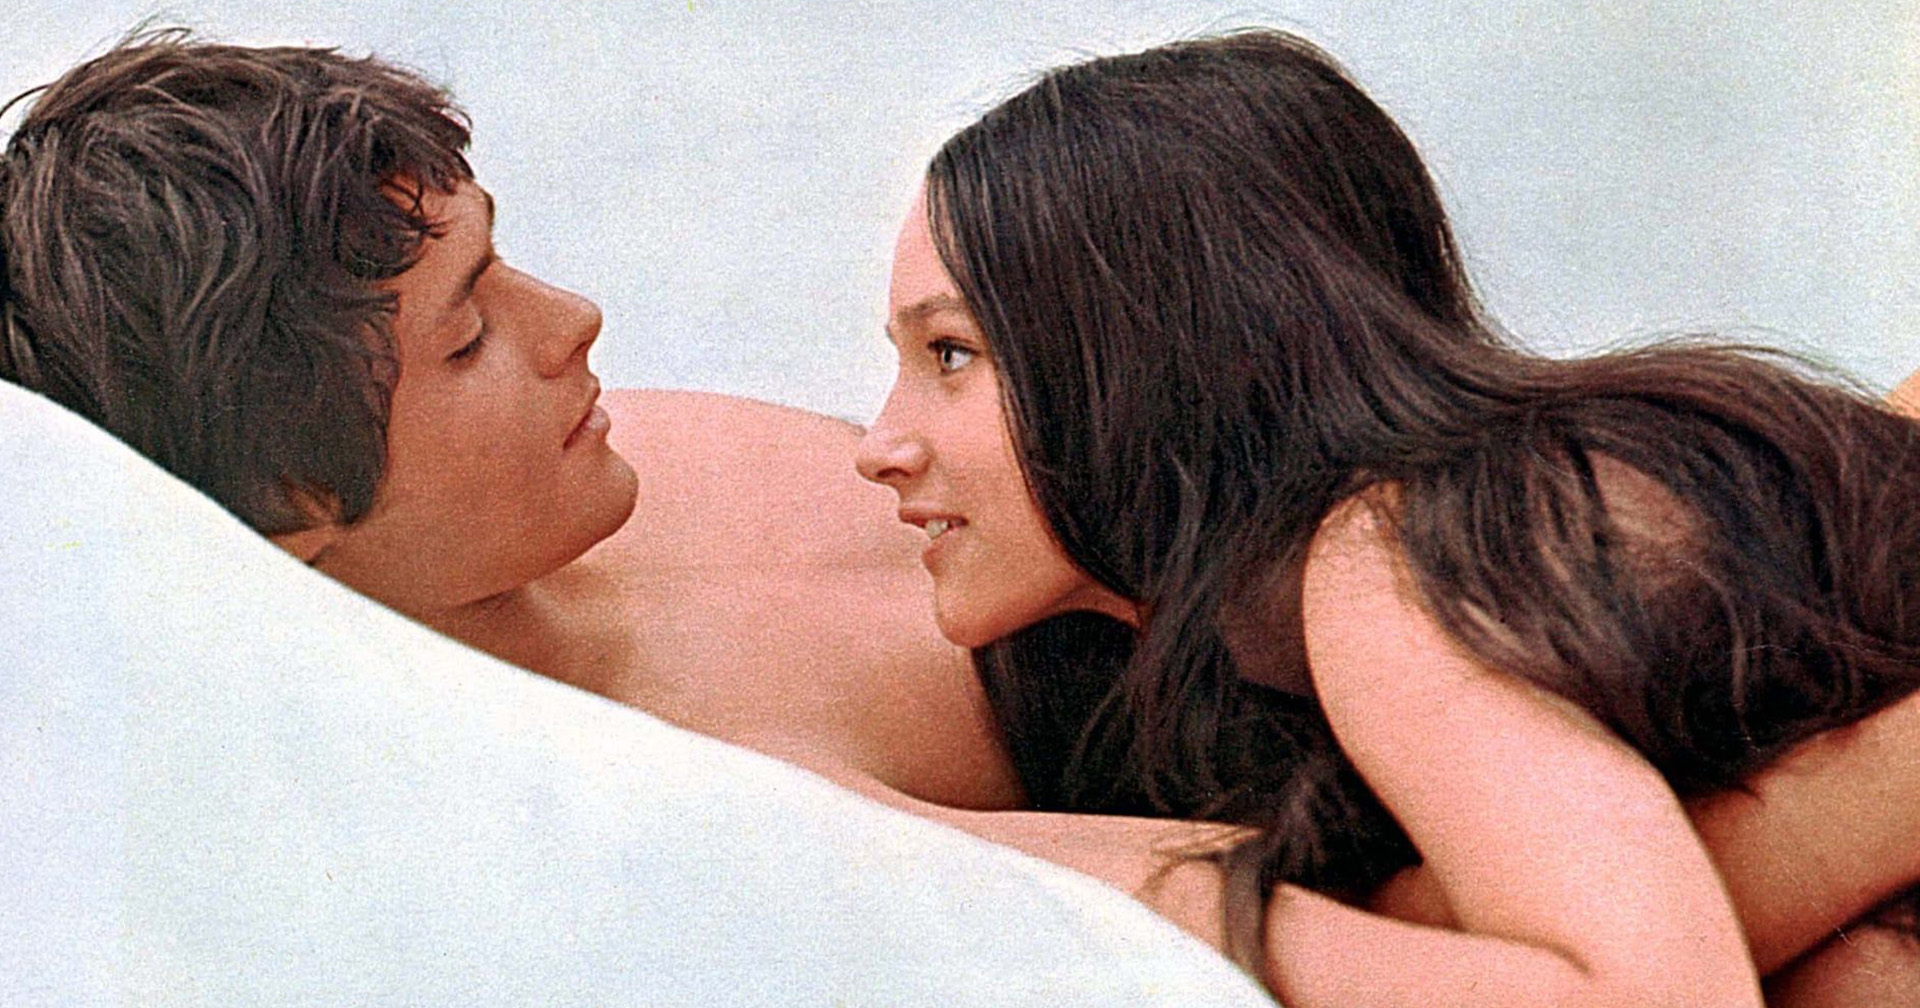 นักแสดง ‘Romeo and Juliet’ ฉบับ 1968 ฟ้อง Paramount Pictures หลังถูกหลอกถ่ายฉากเปลือย